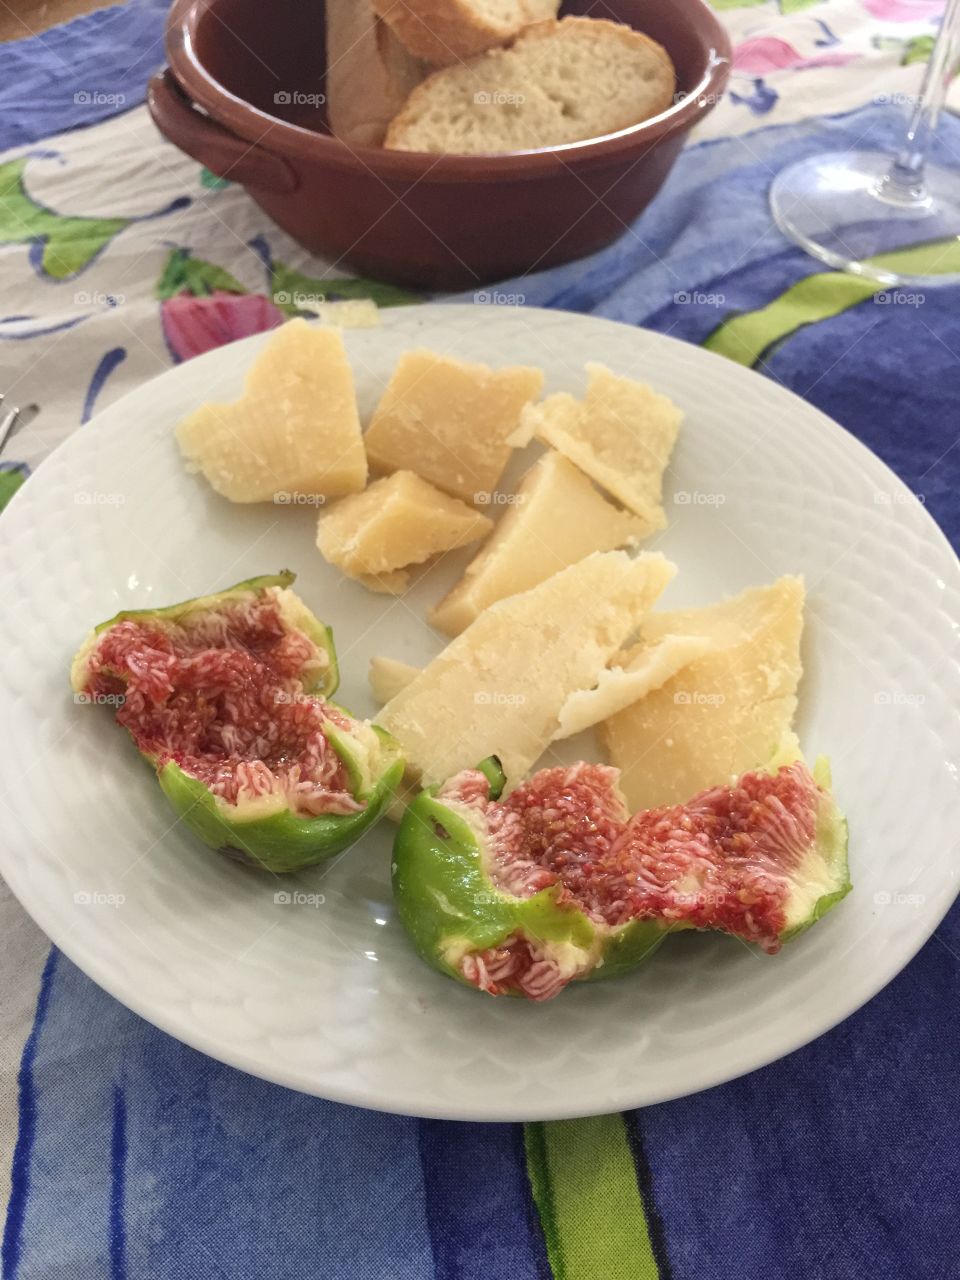 Figs, Grana Padano & Bread